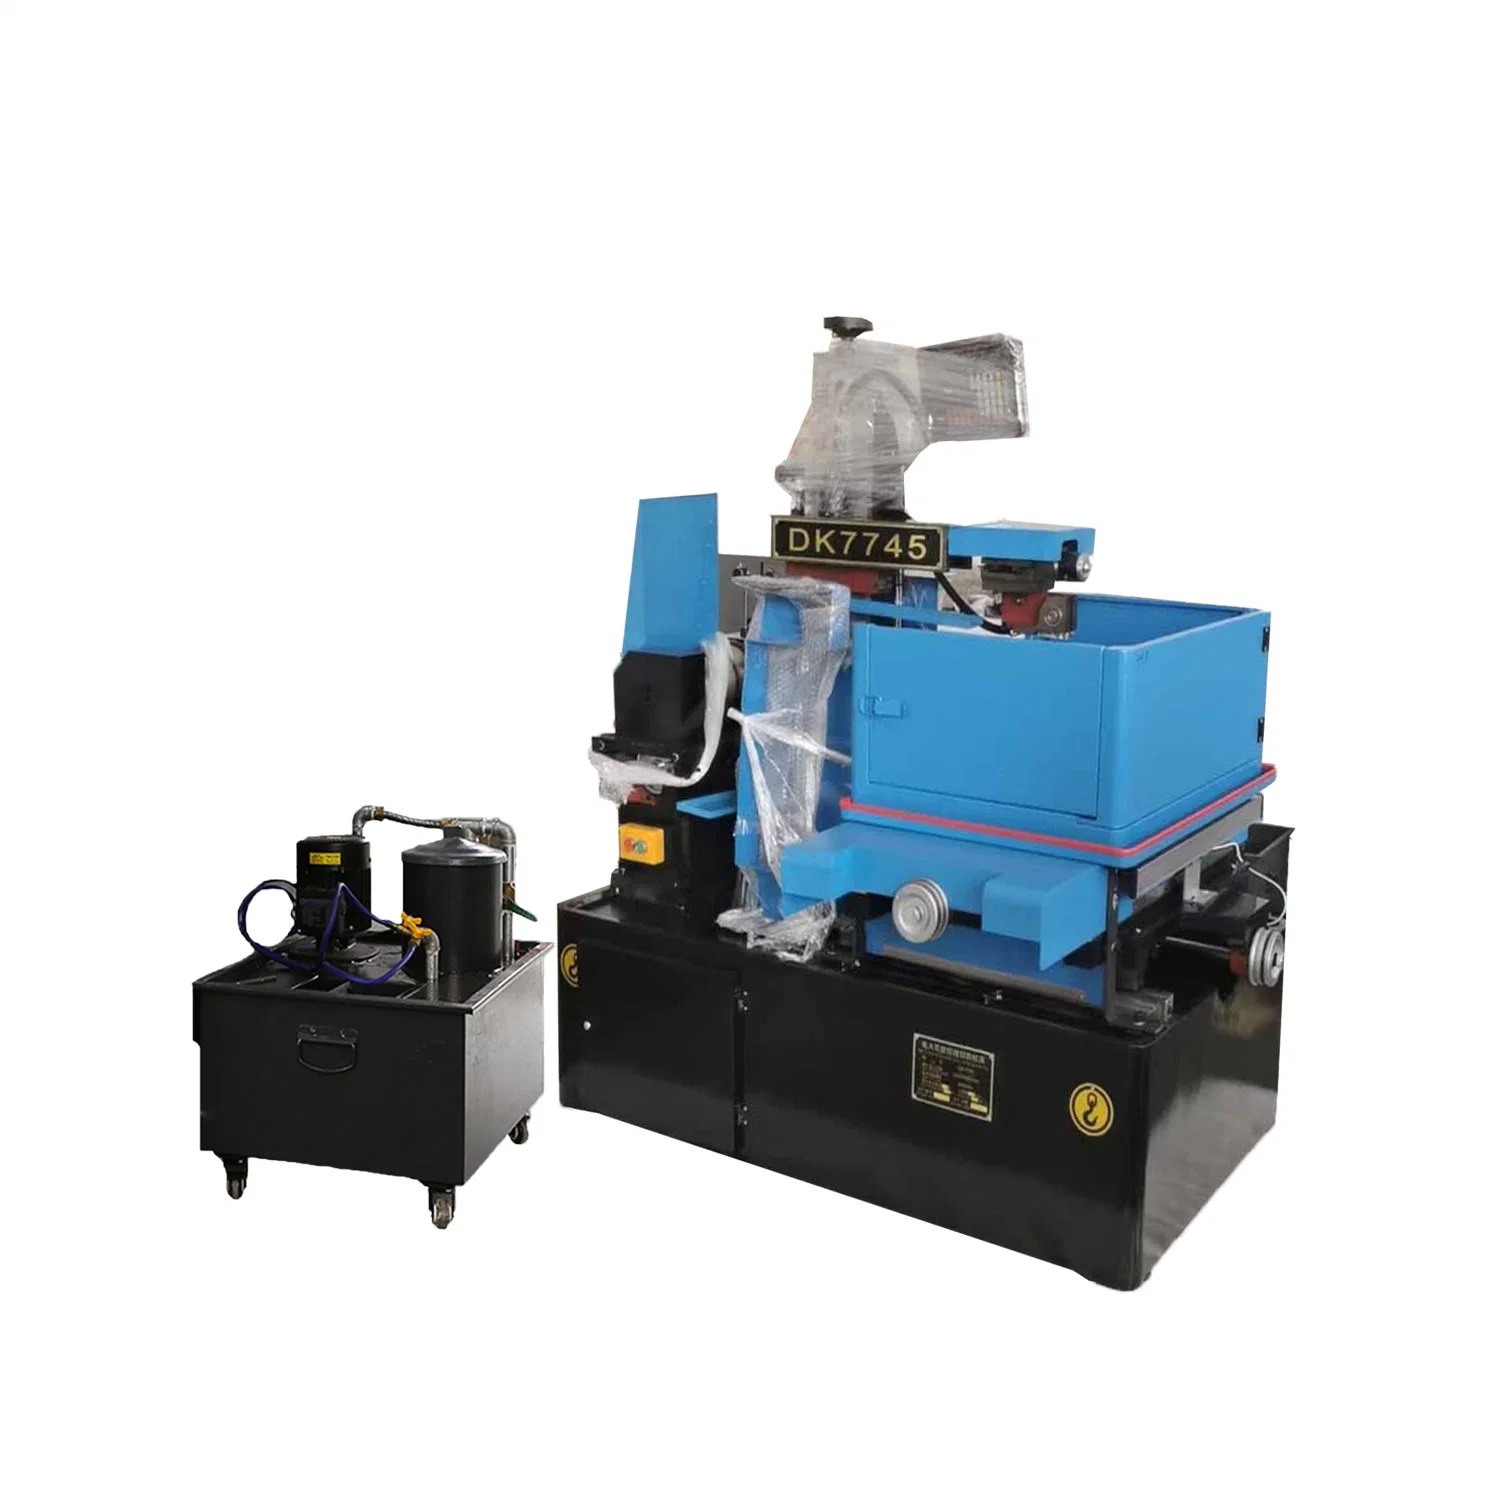 Multifunktionale High-Speed CNC-Draht-Schneidemaschine Werkzeug hohe Qualität Dk7745